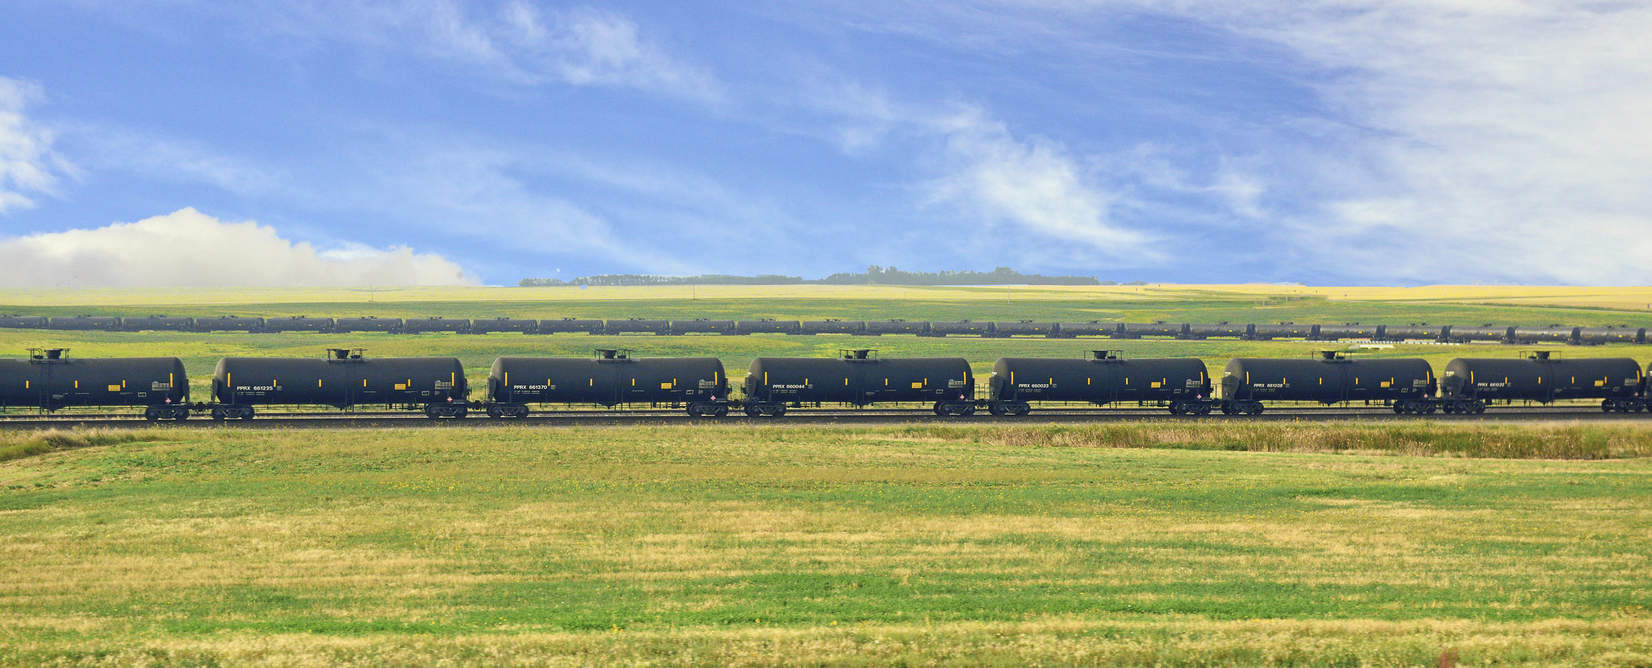 North Dakota oil trains